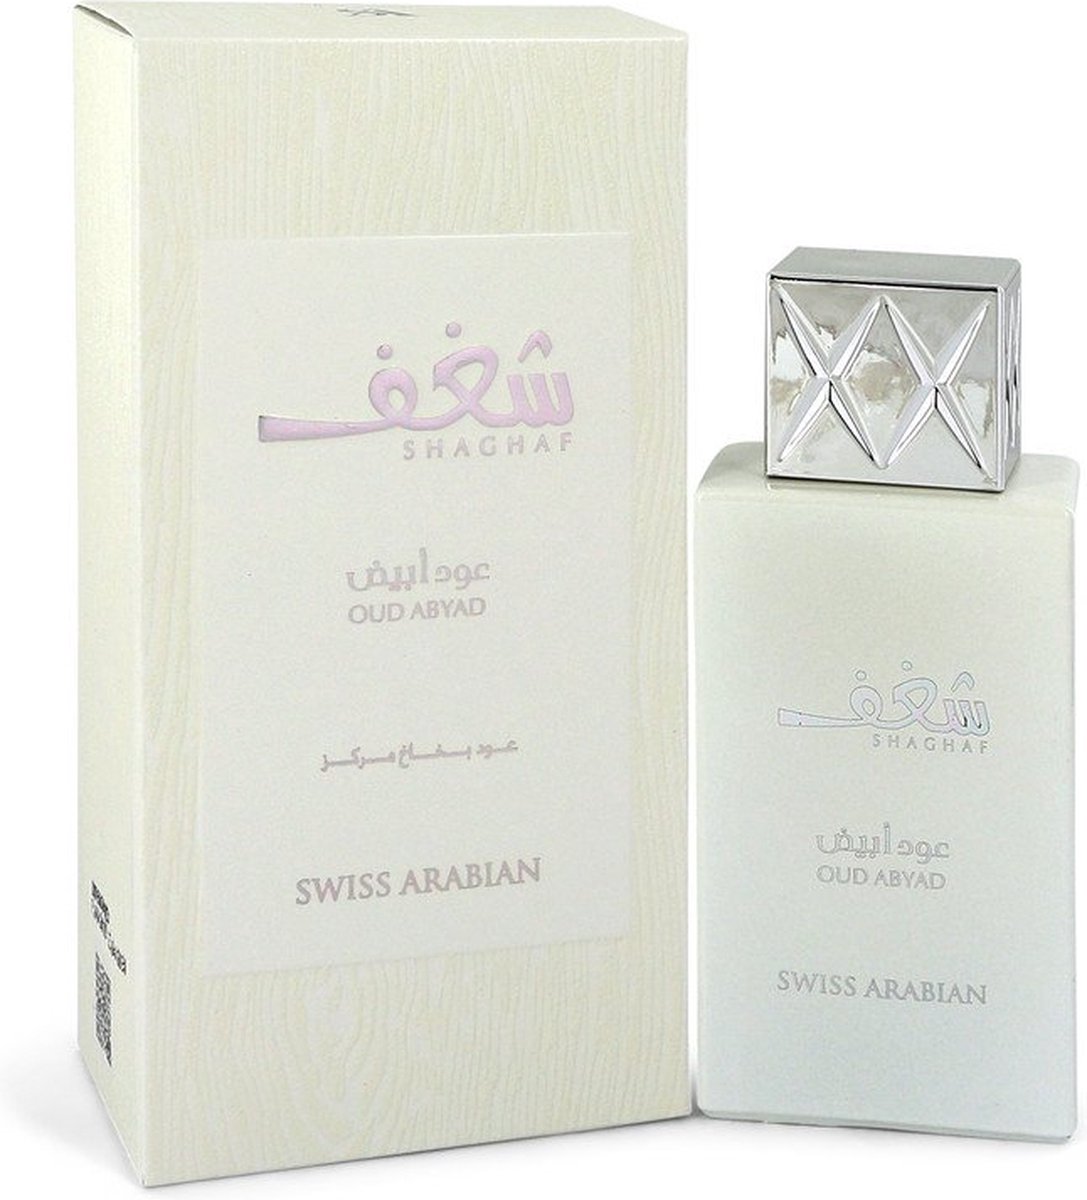 Swiss Arabian Shaghaf Oud Abyad - Eau de parfum spray - 75 ml